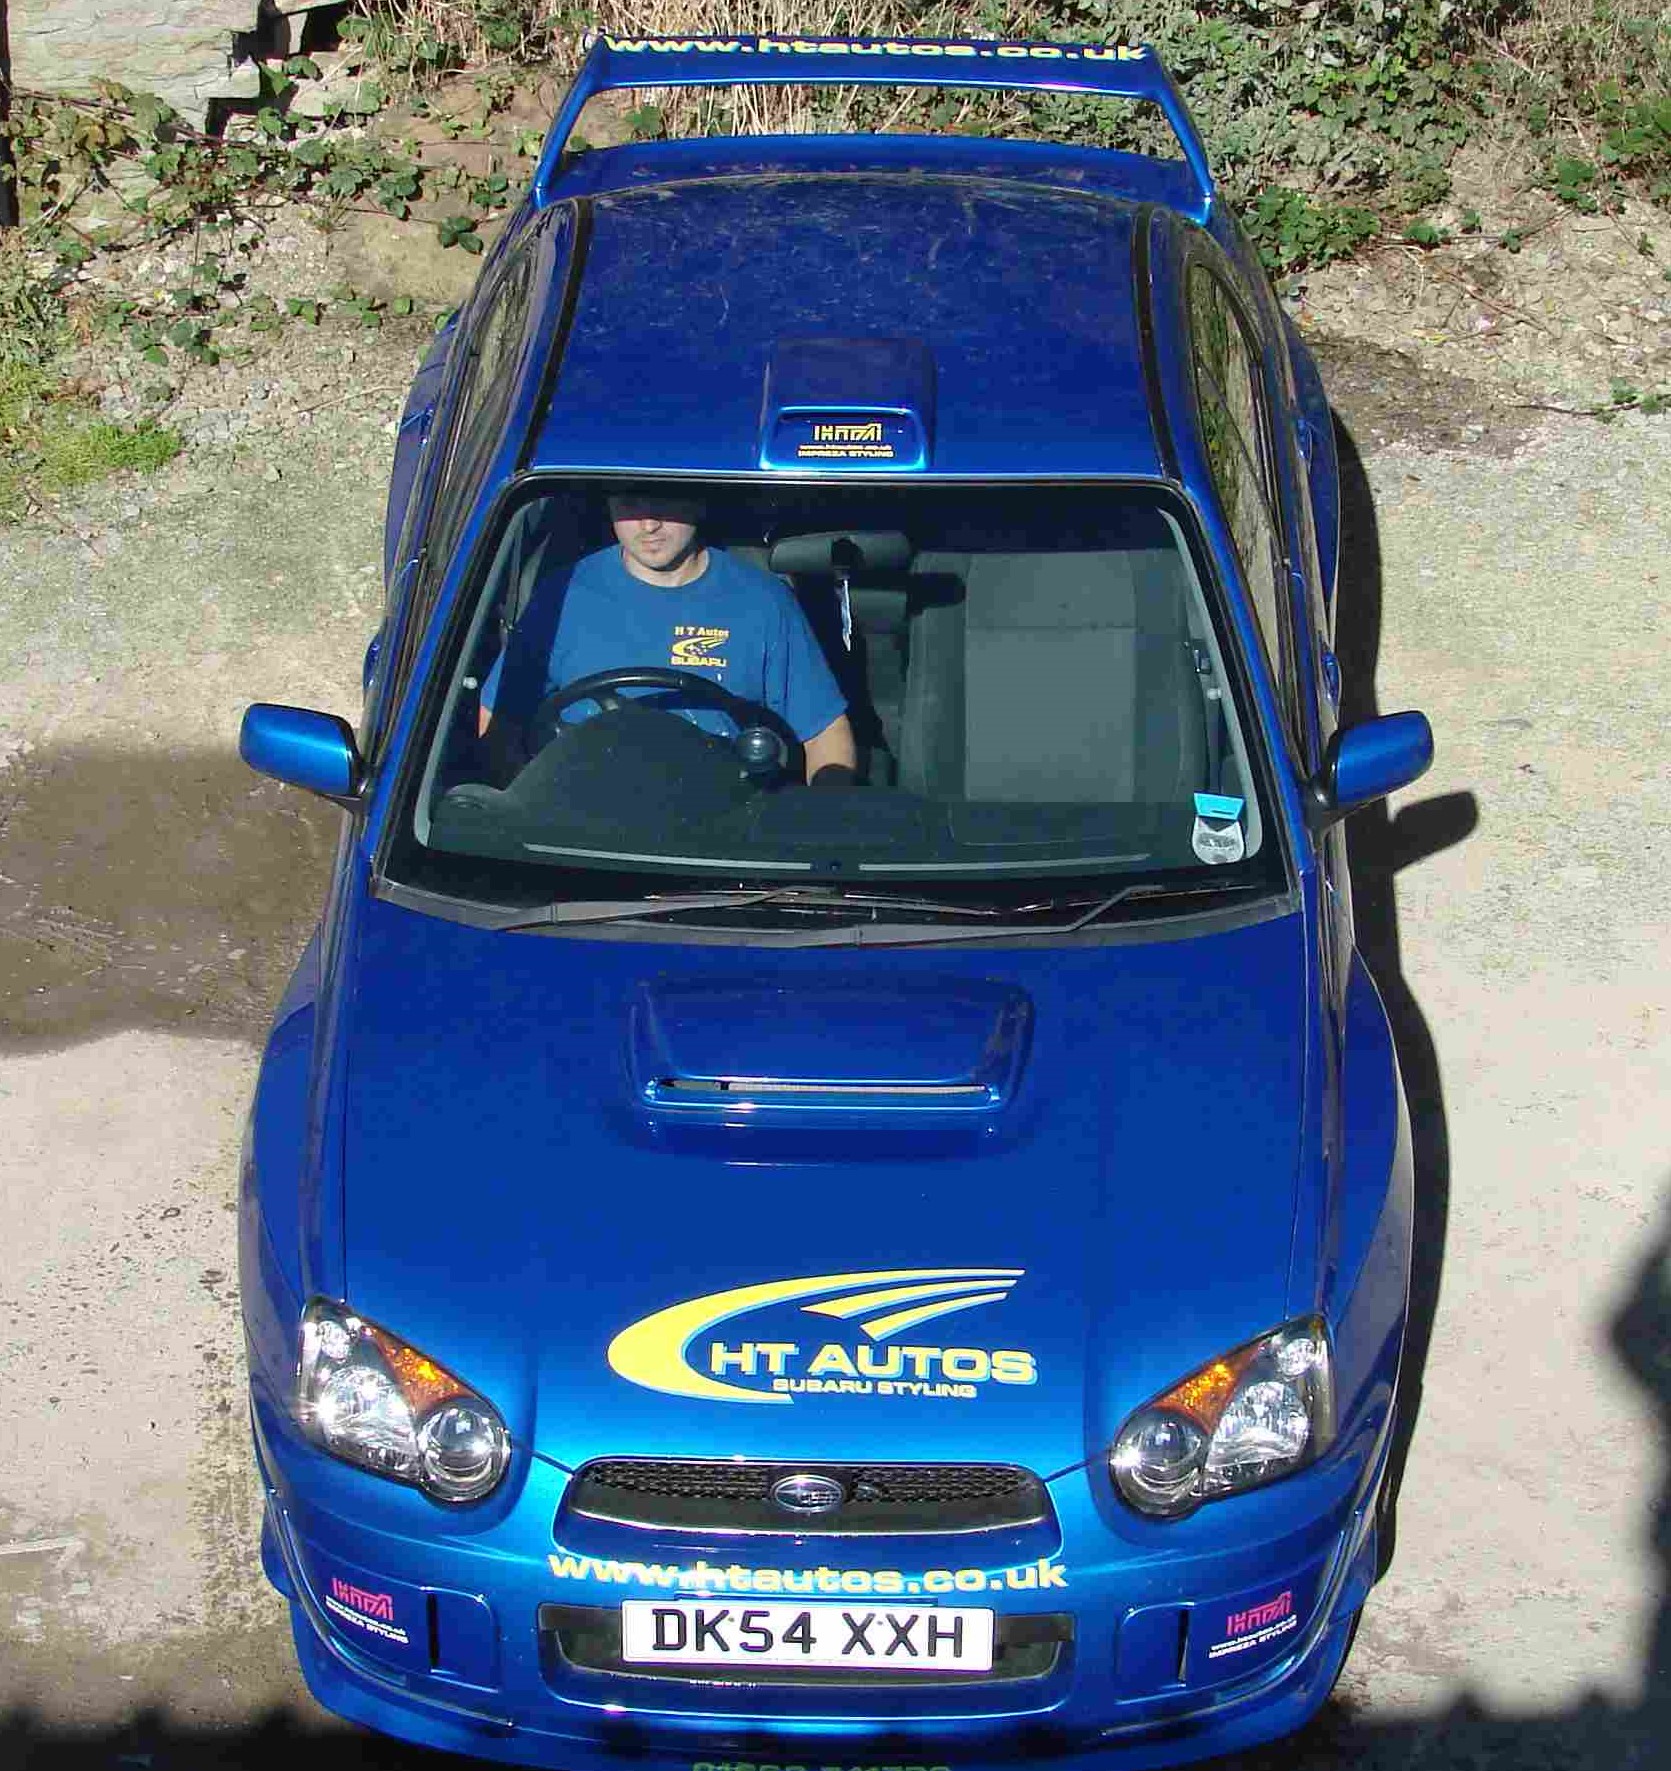 WRC Wide Arched Body Kit for Blobeye Subaru Impreza